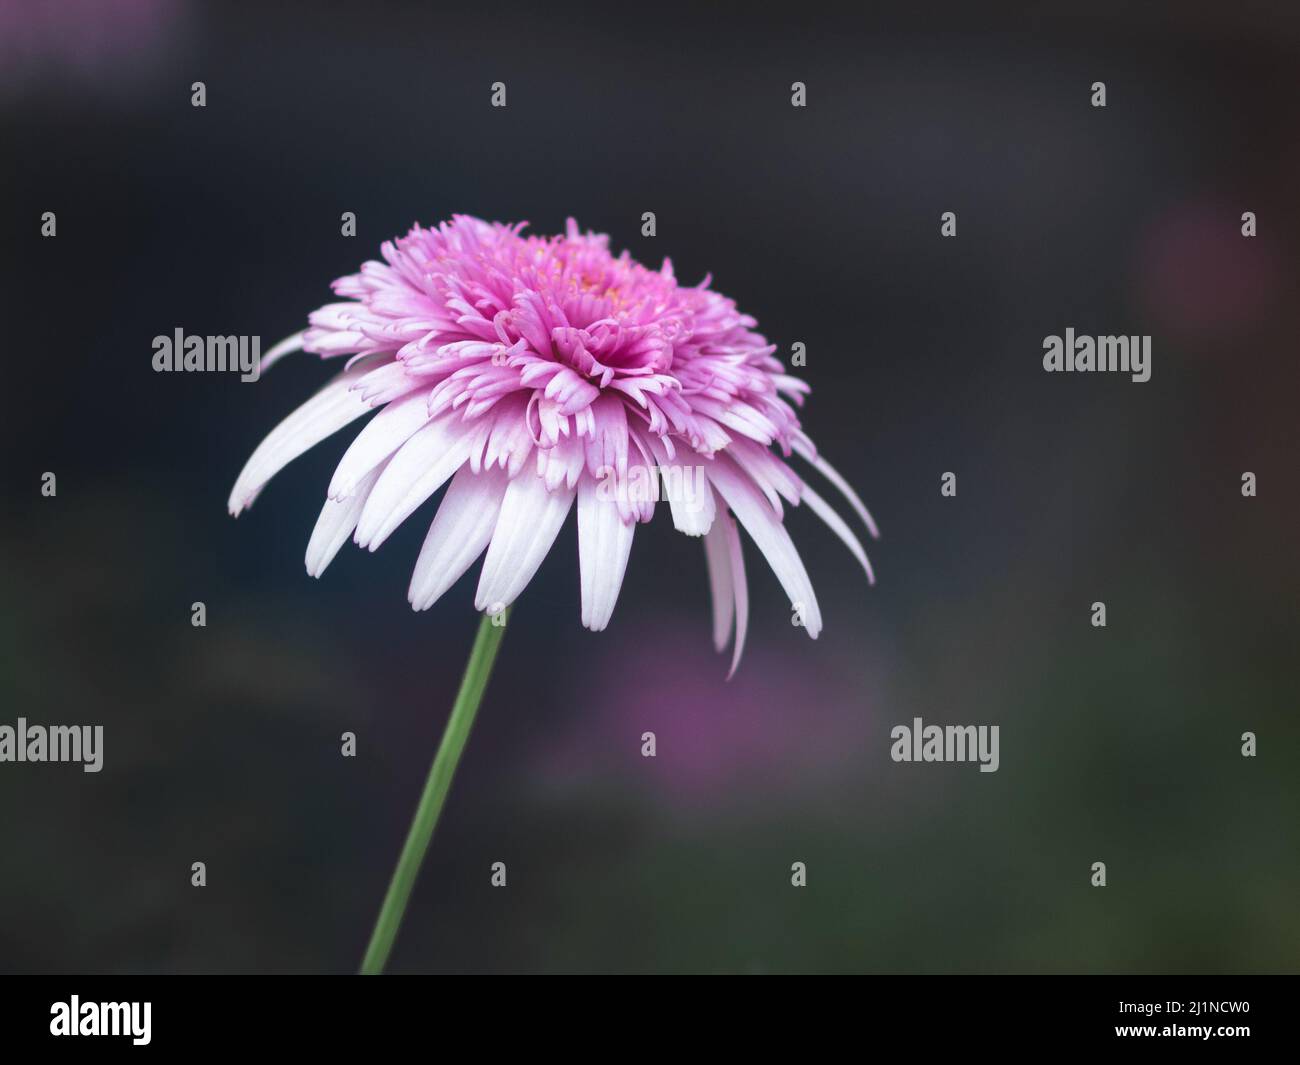 Eine leuchtend rosa chinesische Asterblume mit langen hängenden Blütenblättern, die vor einem unscharfen dunklen Hintergrund blühen. Blumenfotografie mit leerem Platz für Text Stockfoto